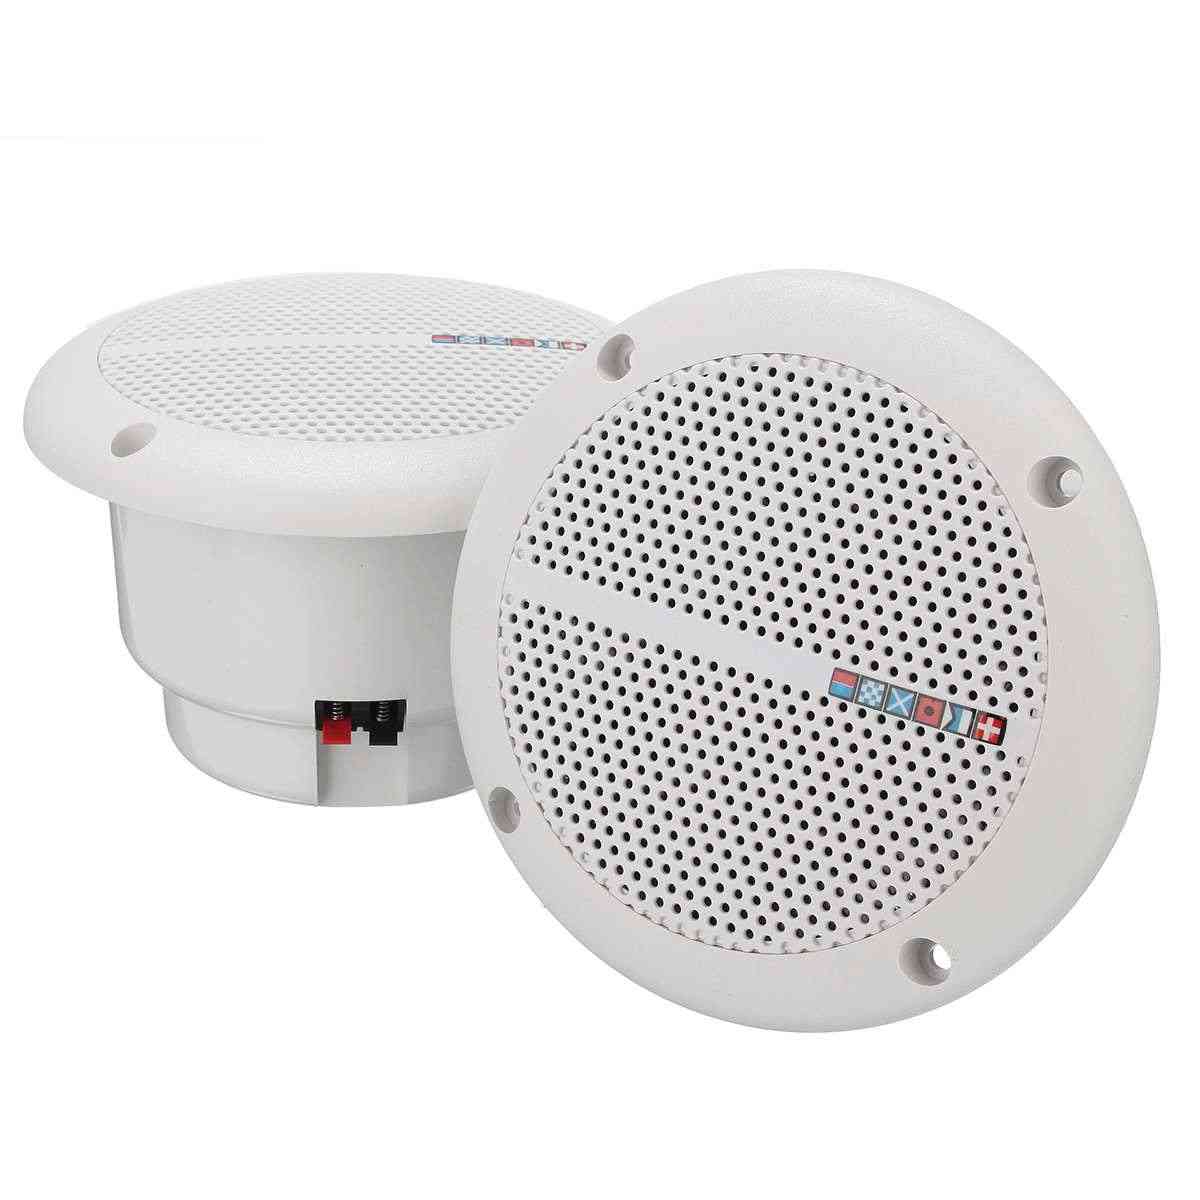 Ceiling Wall Speakers, Waterproof Loudspeaker, Marine Boat Water Resistant Speakers